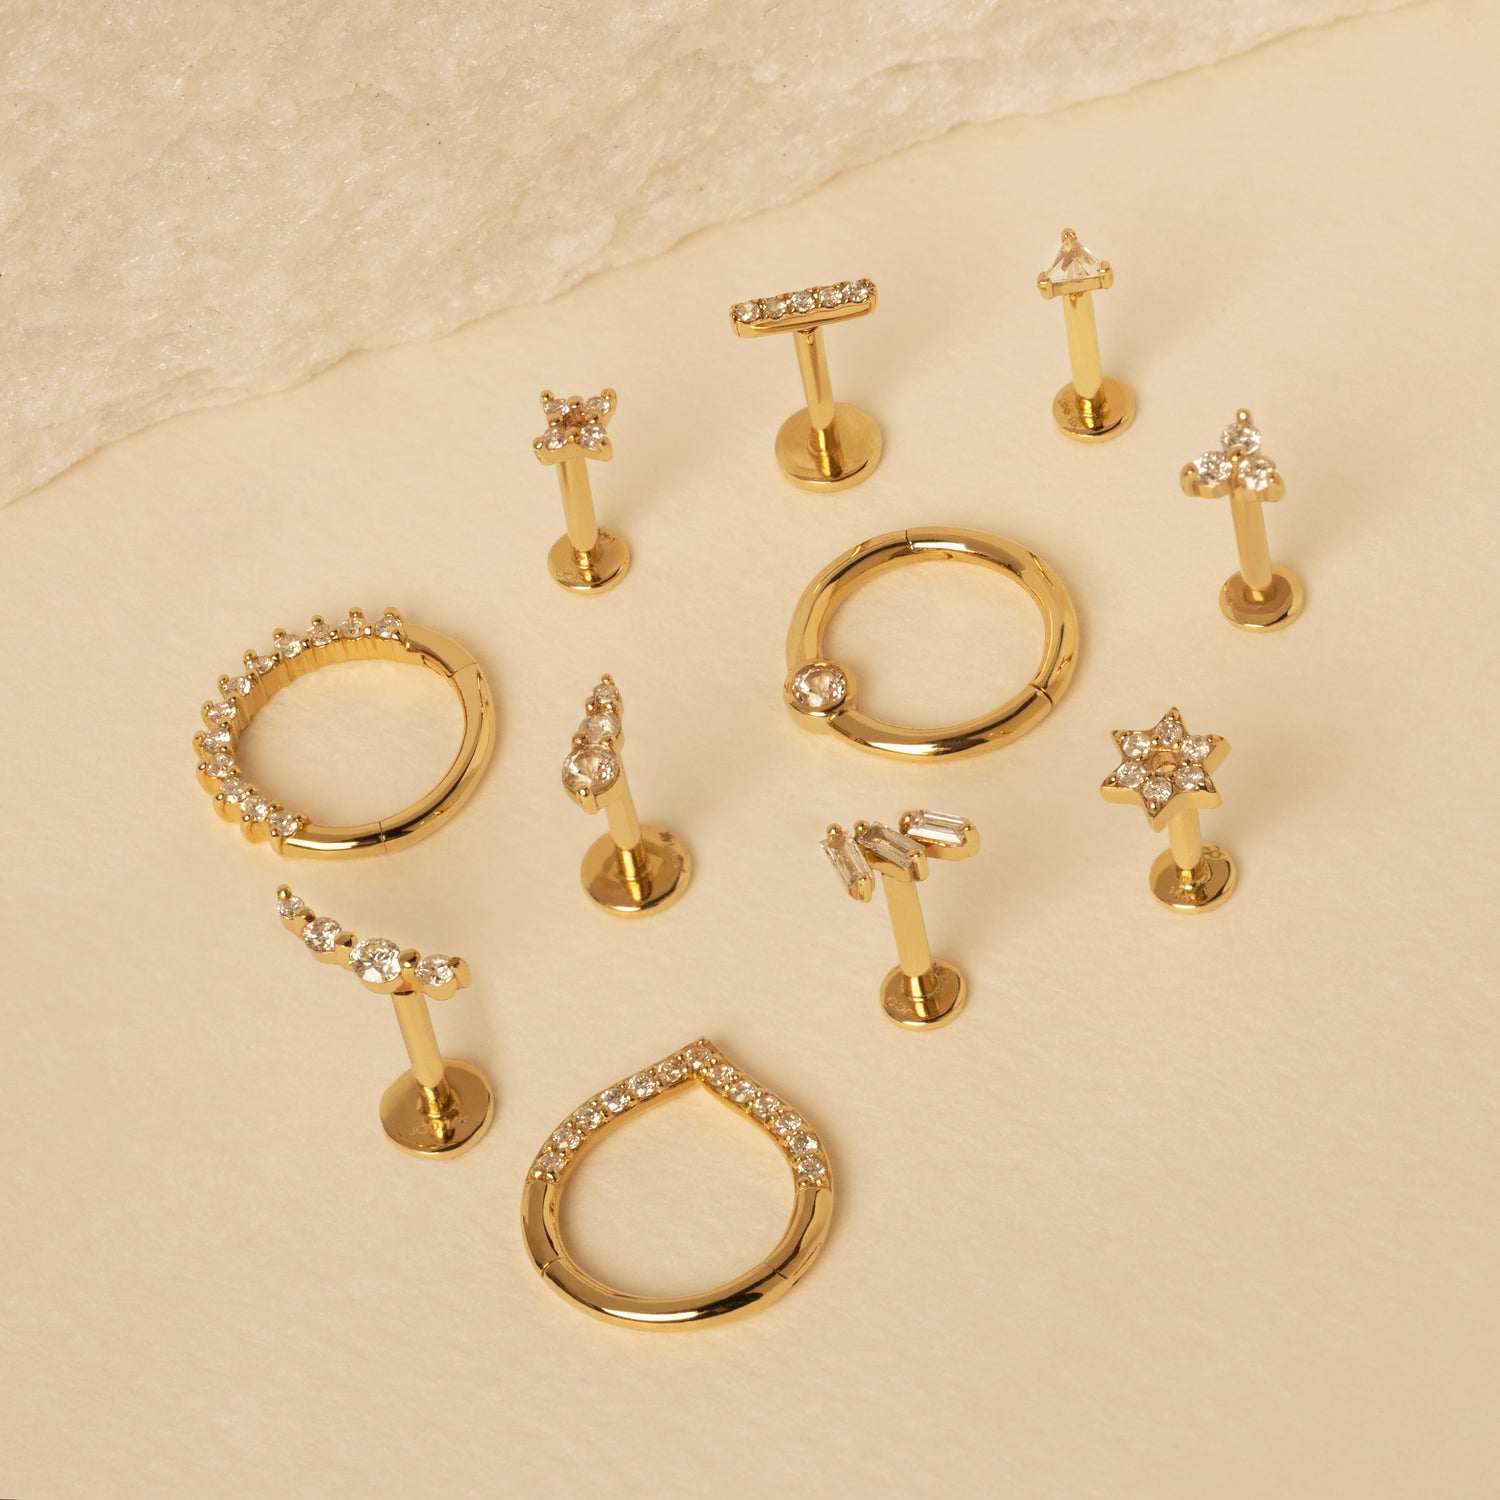 Fancy Gold Earrings Jewellery at Rs 25000/pair in Varanasi | ID: 10889201055